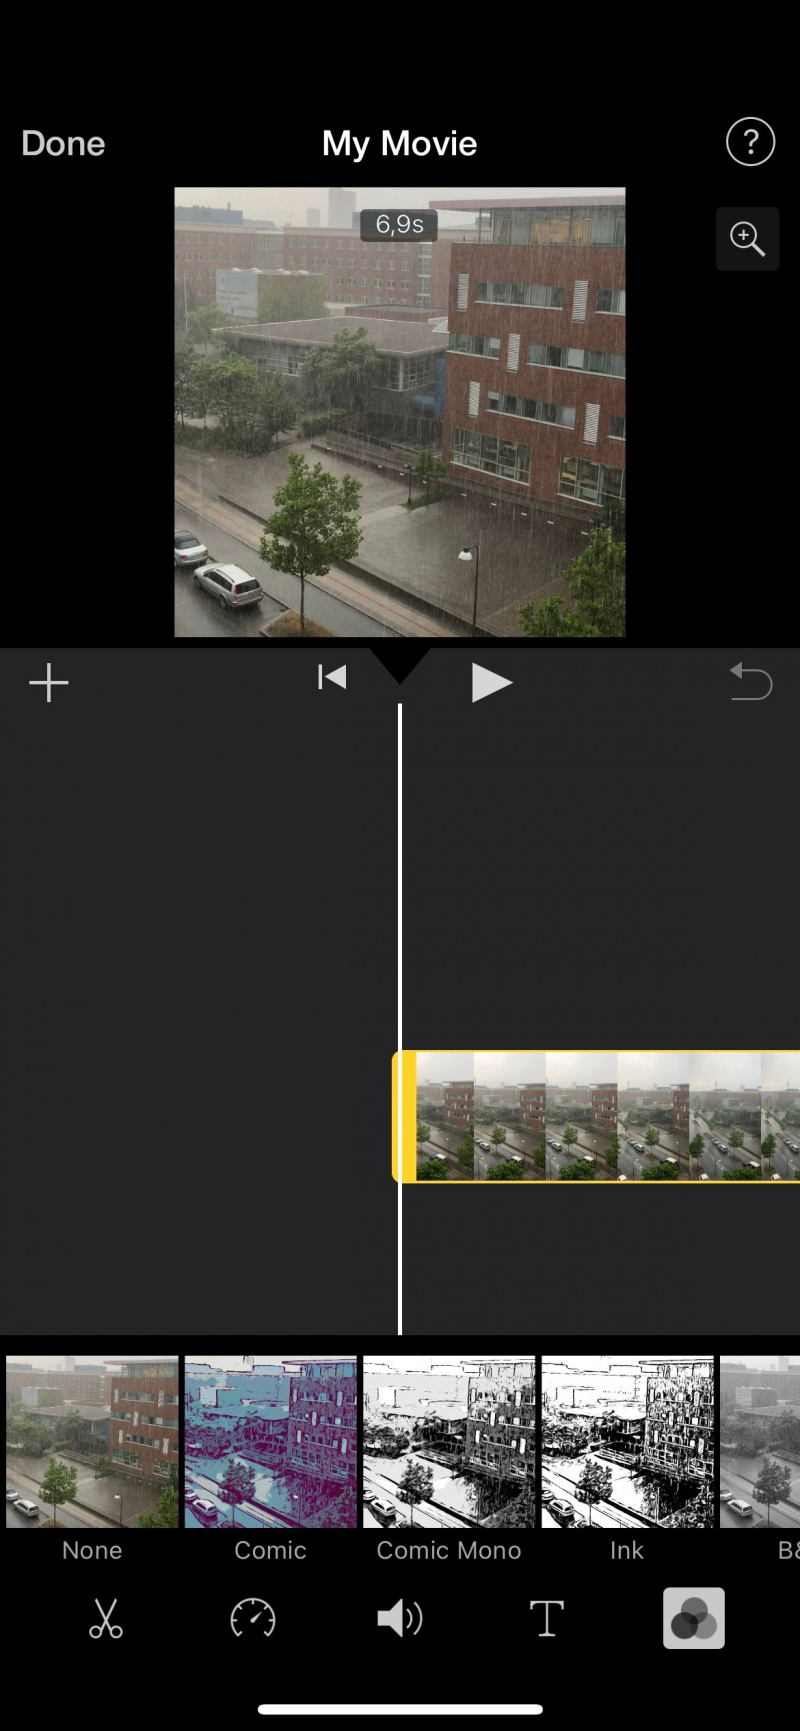   iMovie 스크린샷에서 색상 편집